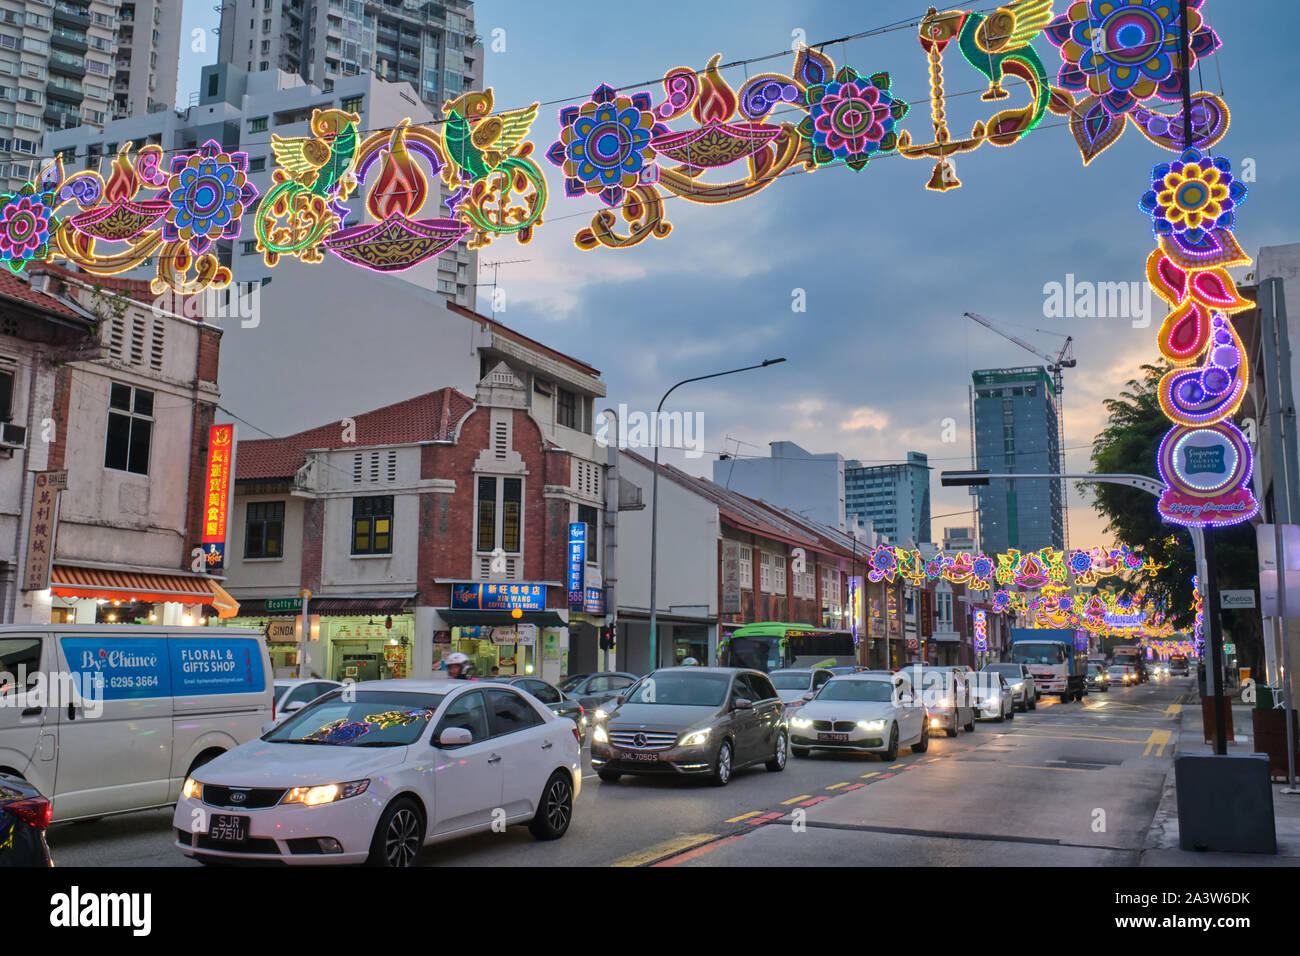 Serangoon Road, Singapur, am Rande von Little India, für Deepavali (Diwali) Festival geschmückt, die von den lokalen hinduistischen Gemeinschaft gefeiert. Stockfoto